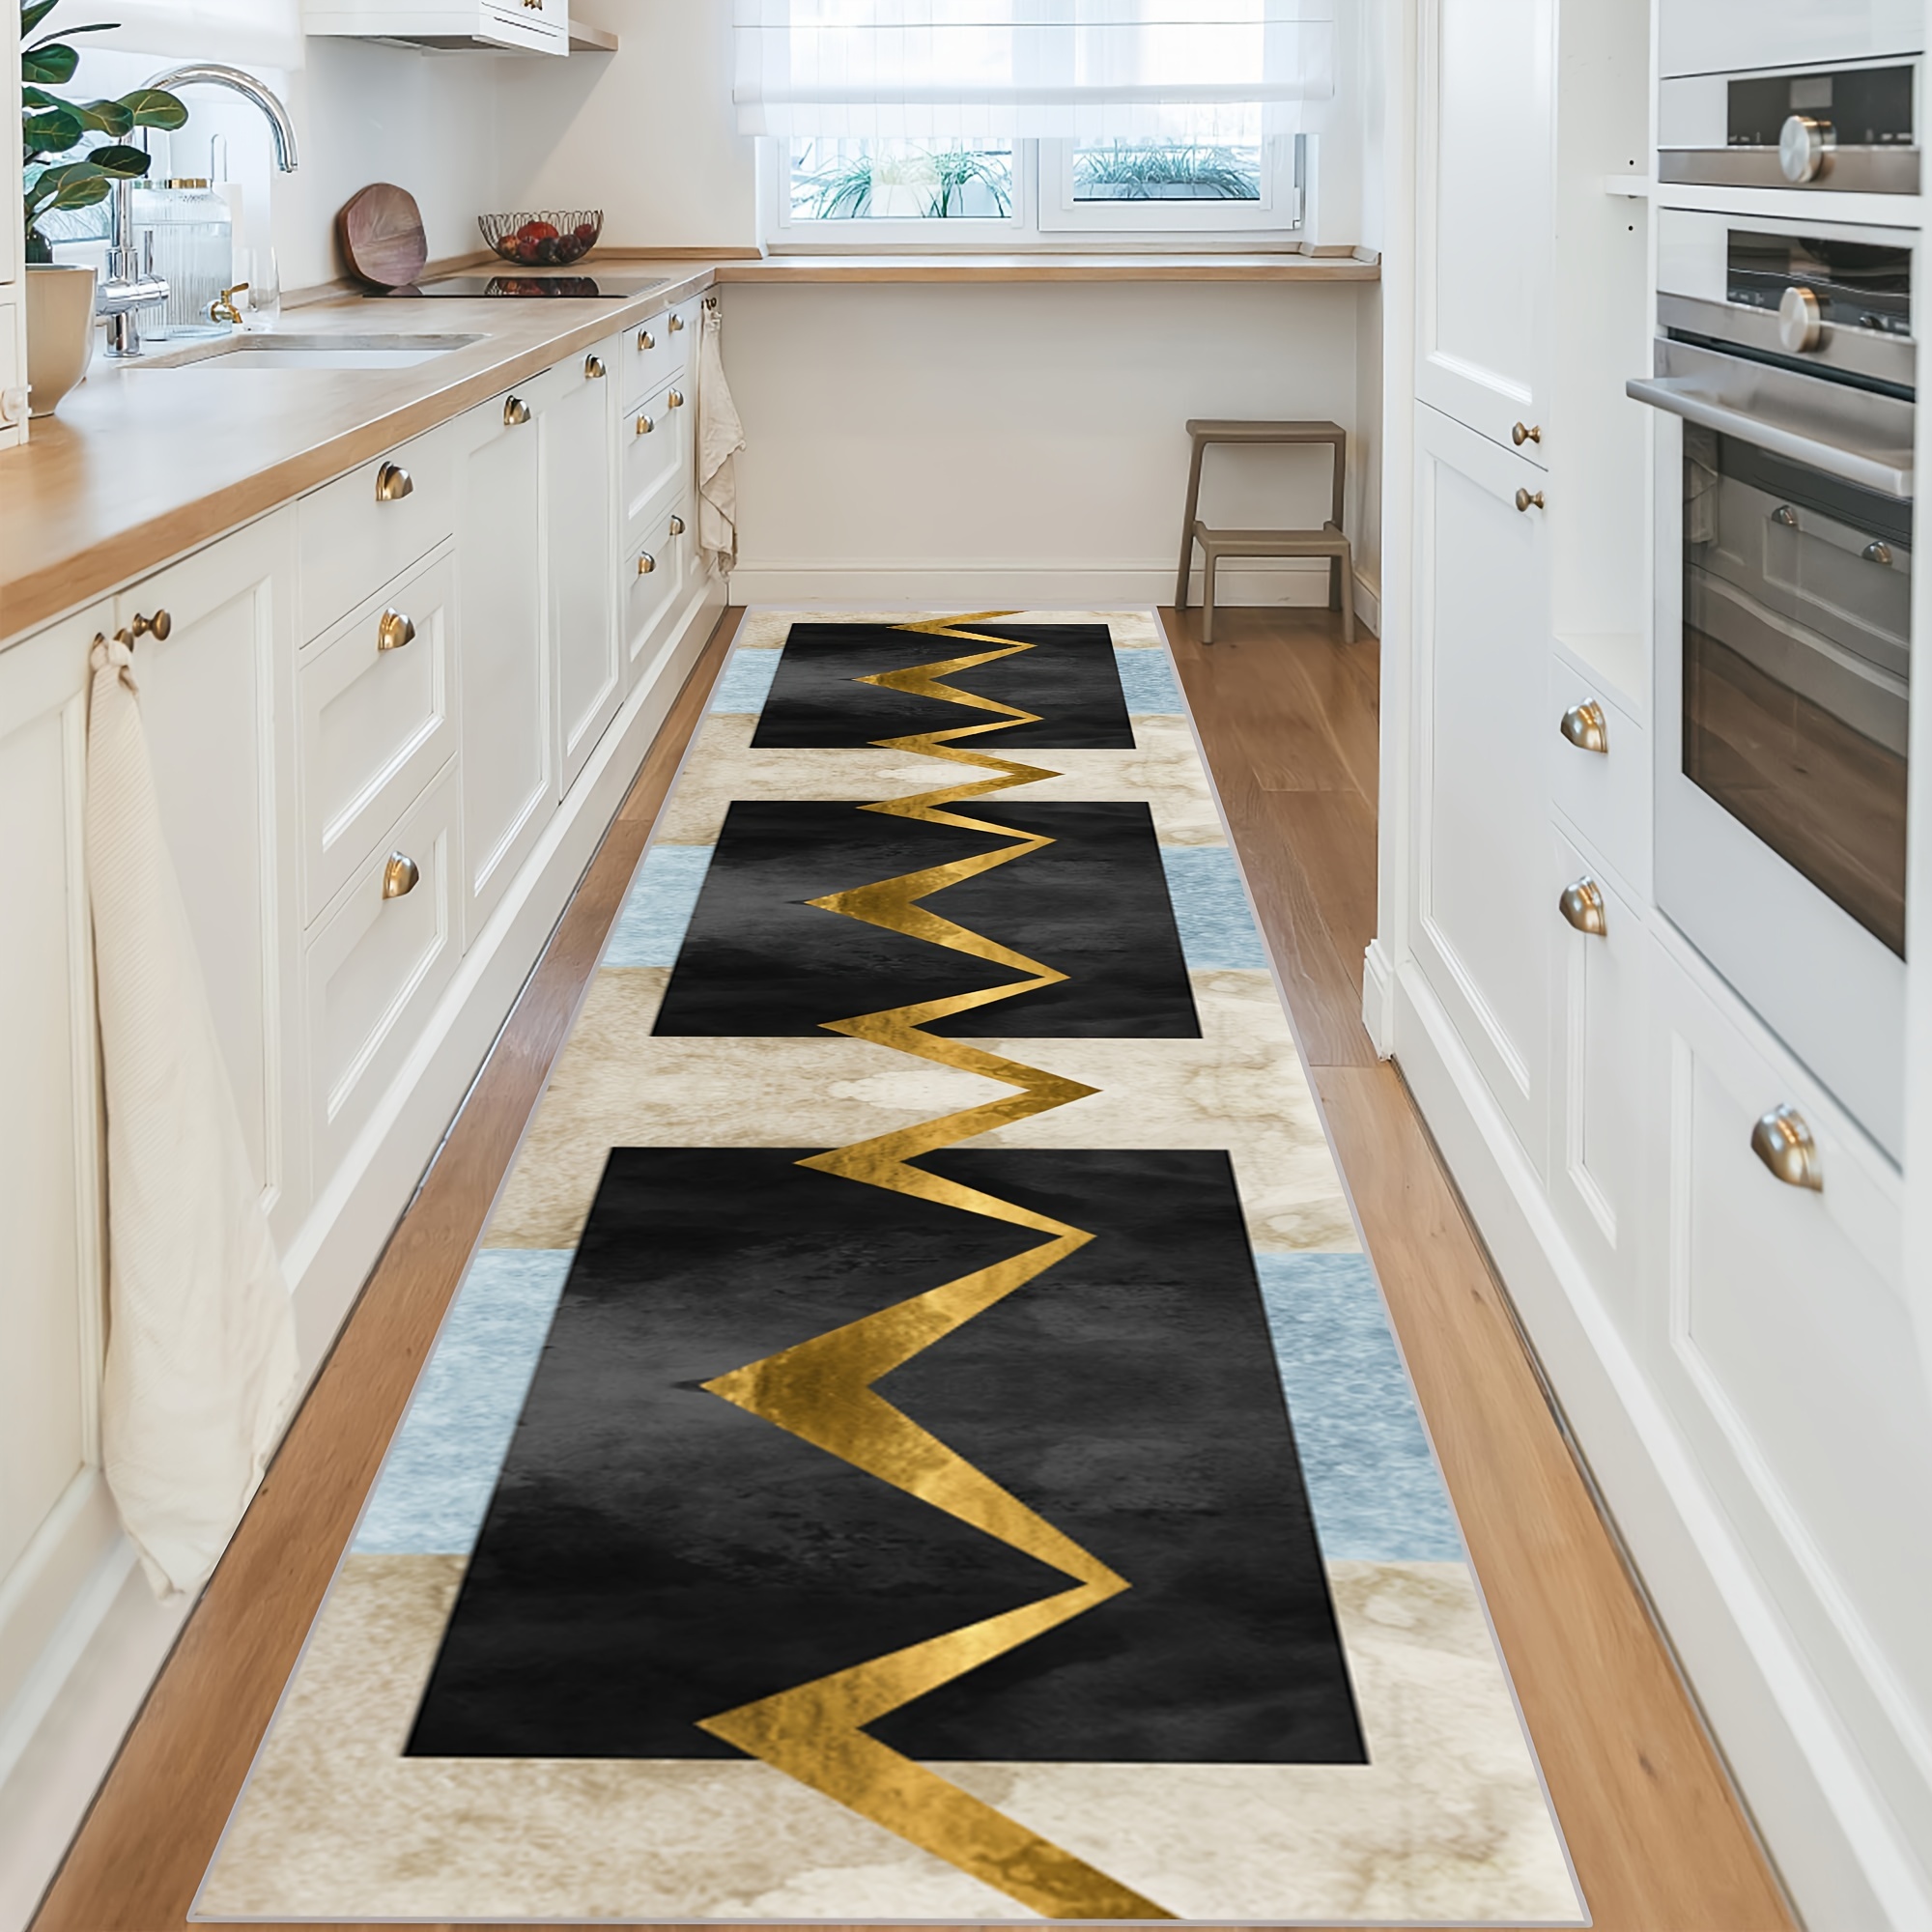 Designer Non Slip Runner Rugs For Hardwood Floors In Kitchen